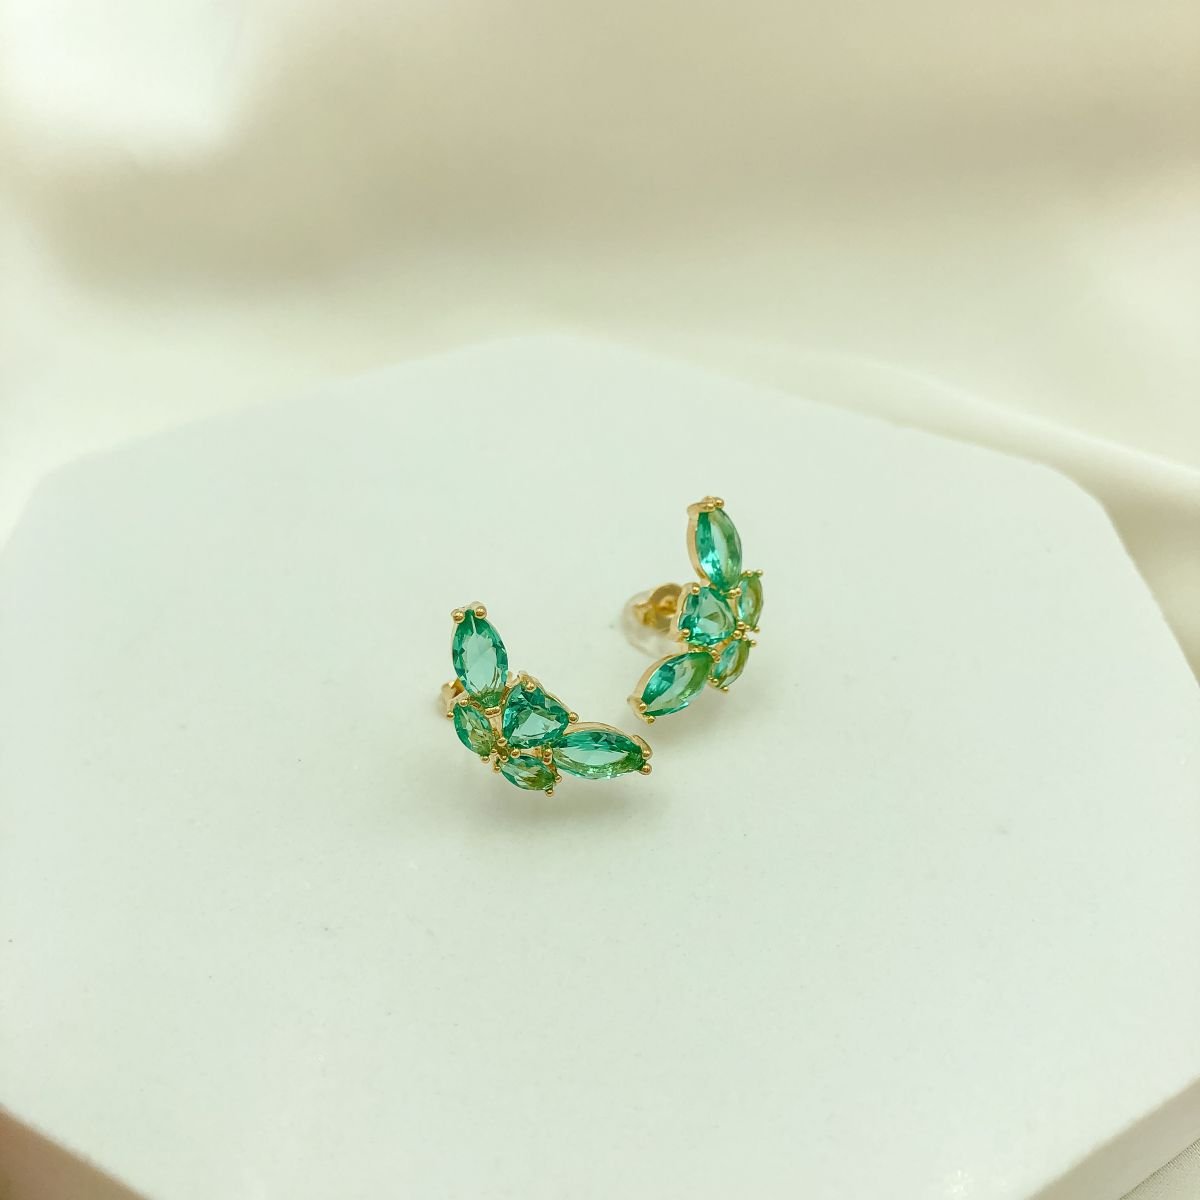 Brinco Ear Cuff Médio Todo Cravejado em Zircônias Verde Esmeralda Banhada em Ouro 18k